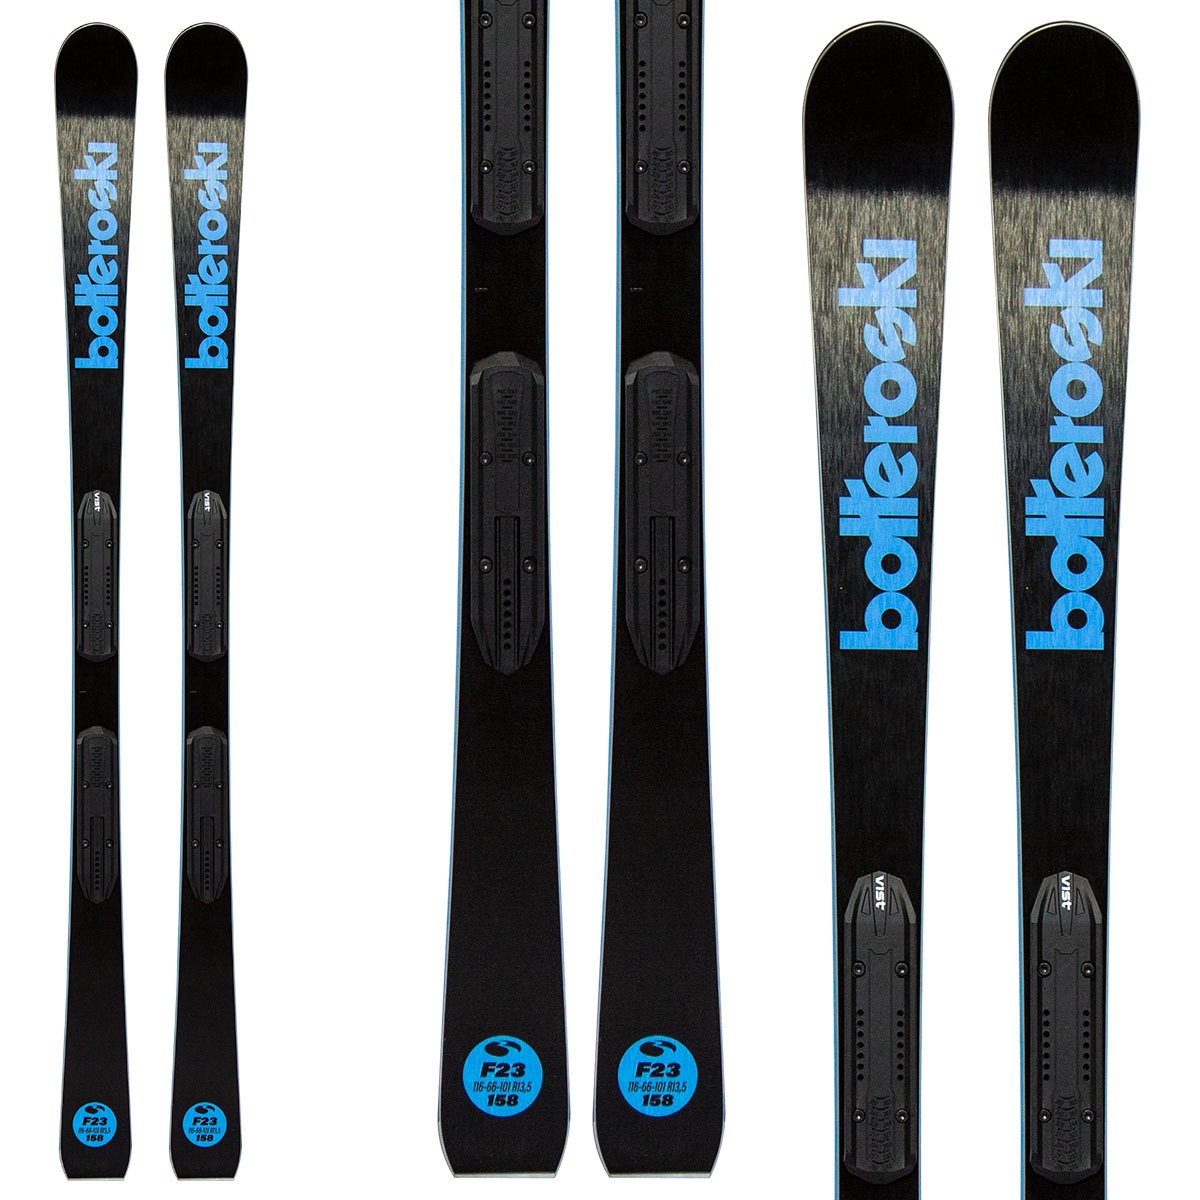  Sci Bottero Ski F23 con attacchi Vsp310 con piastra Speed System (Colore: nero-blu, Taglia: 152) 